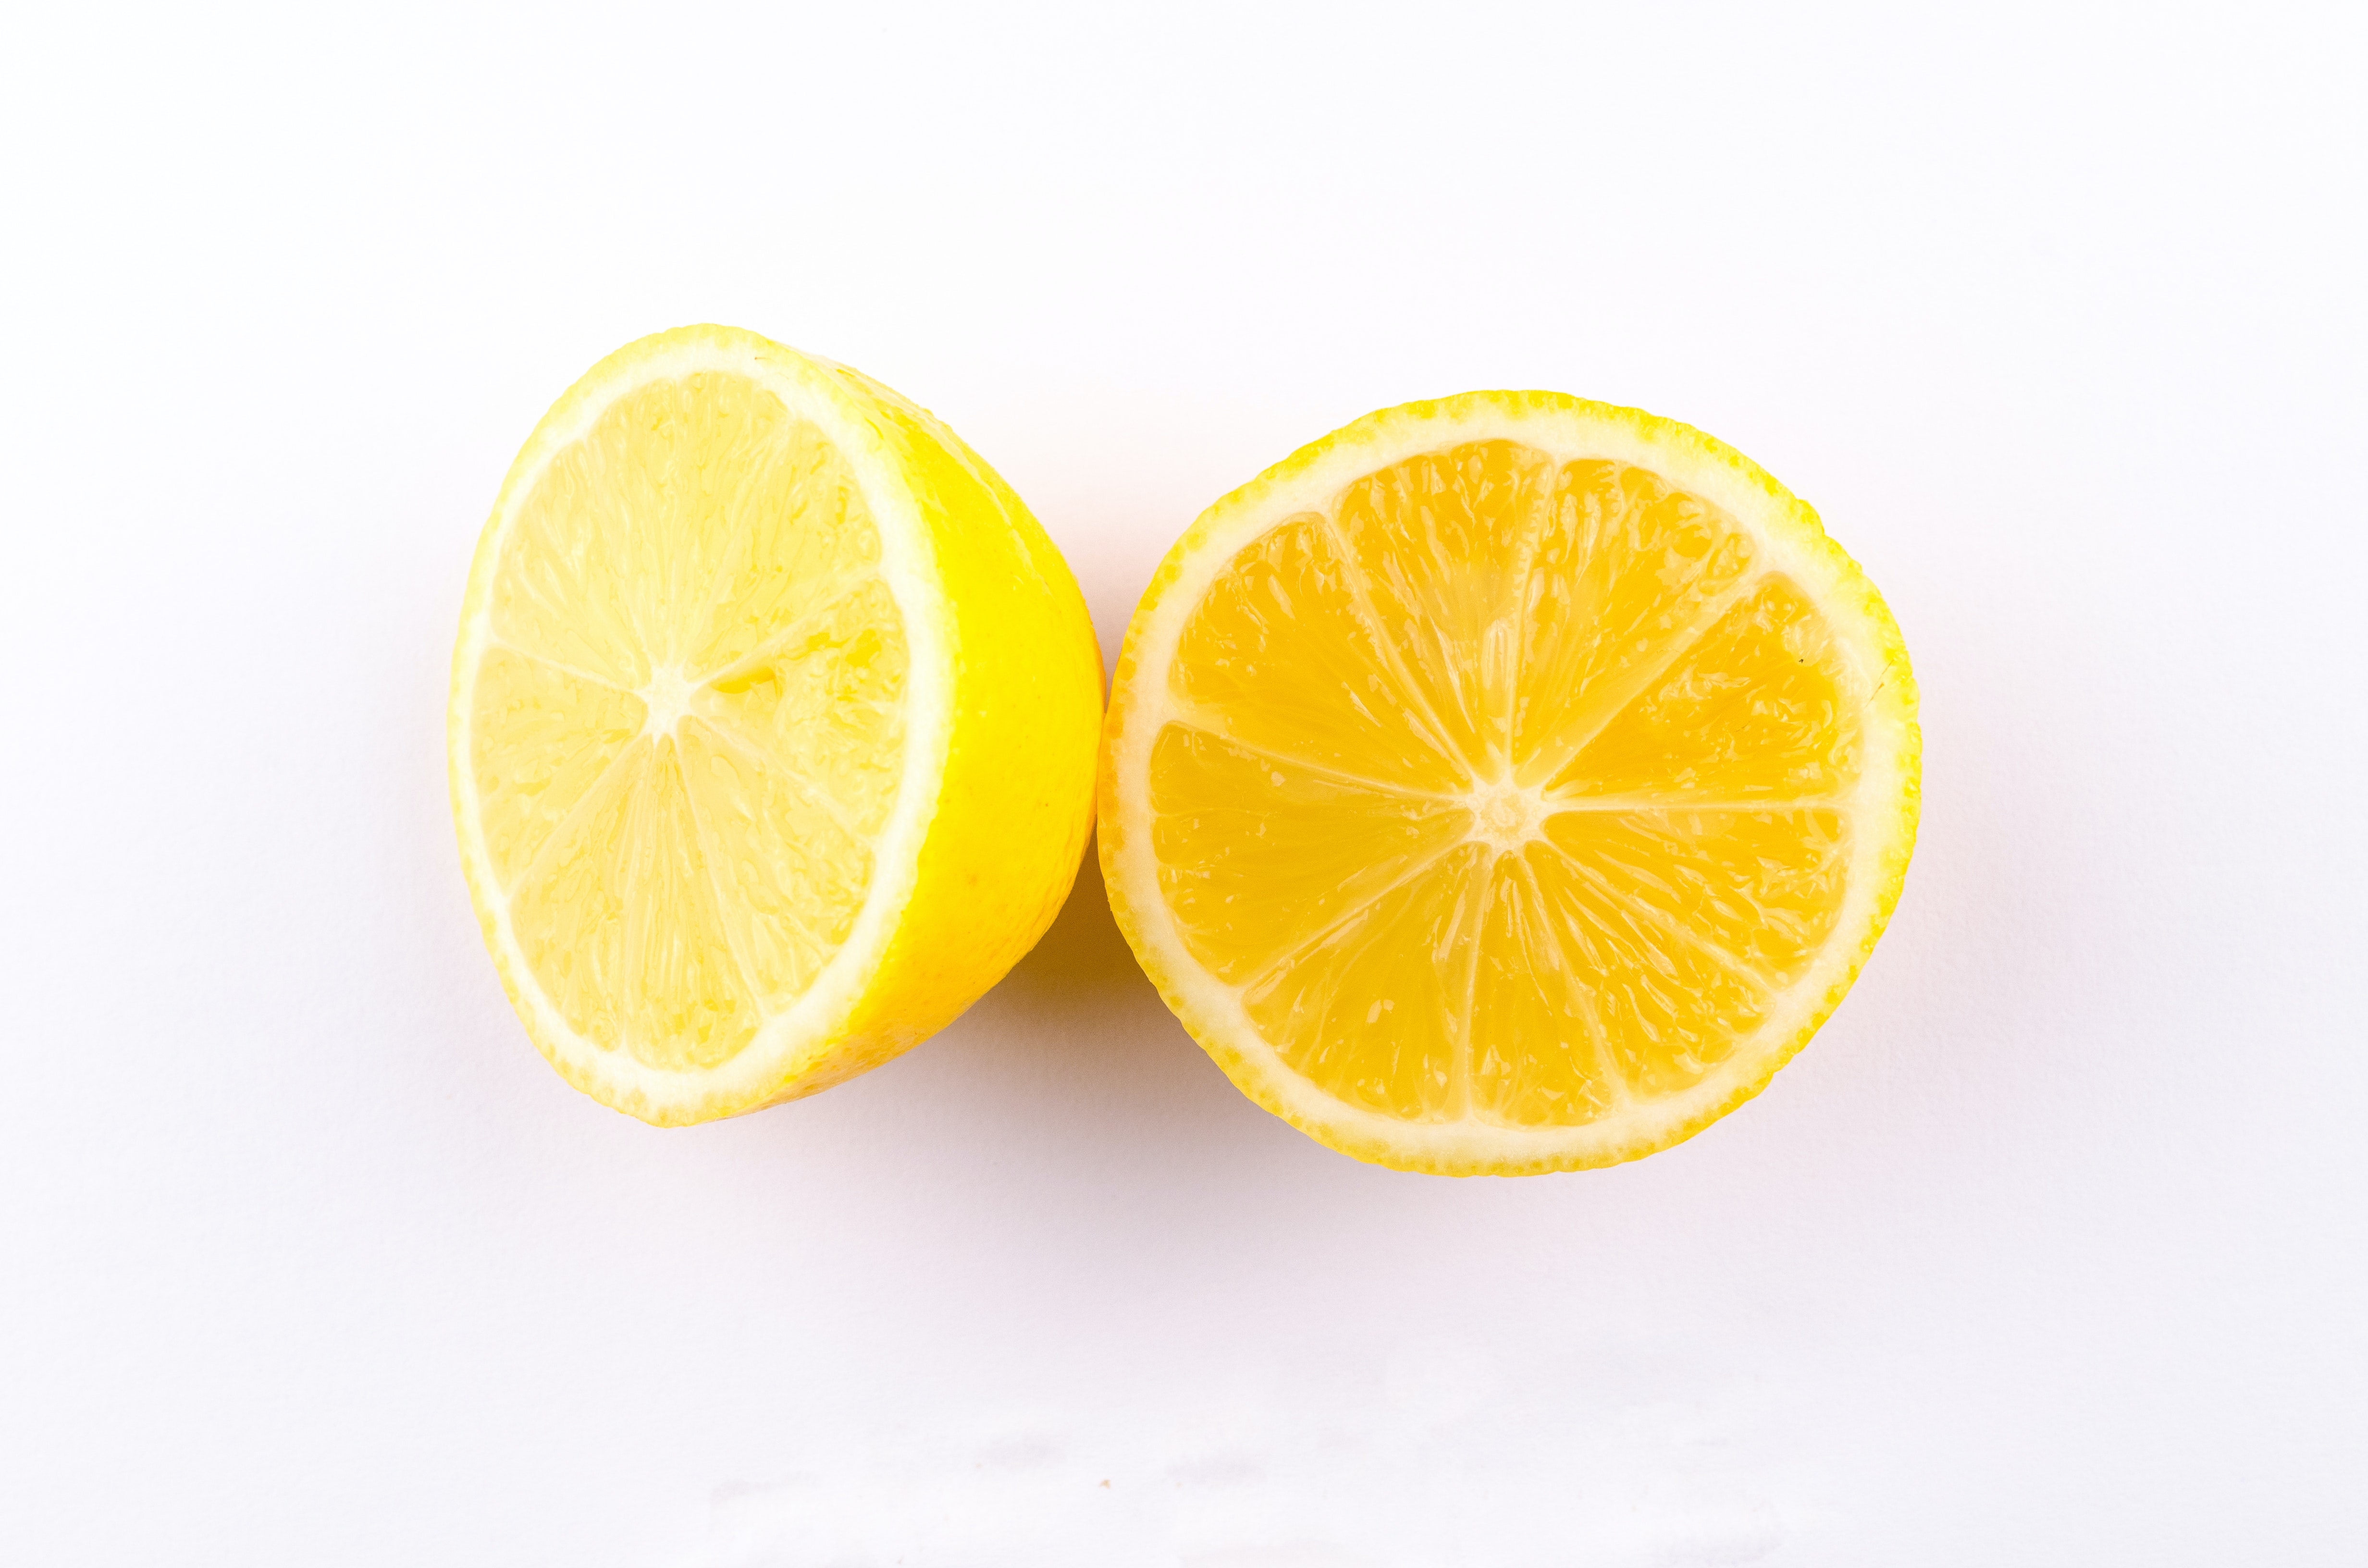 Citron má 100% využití